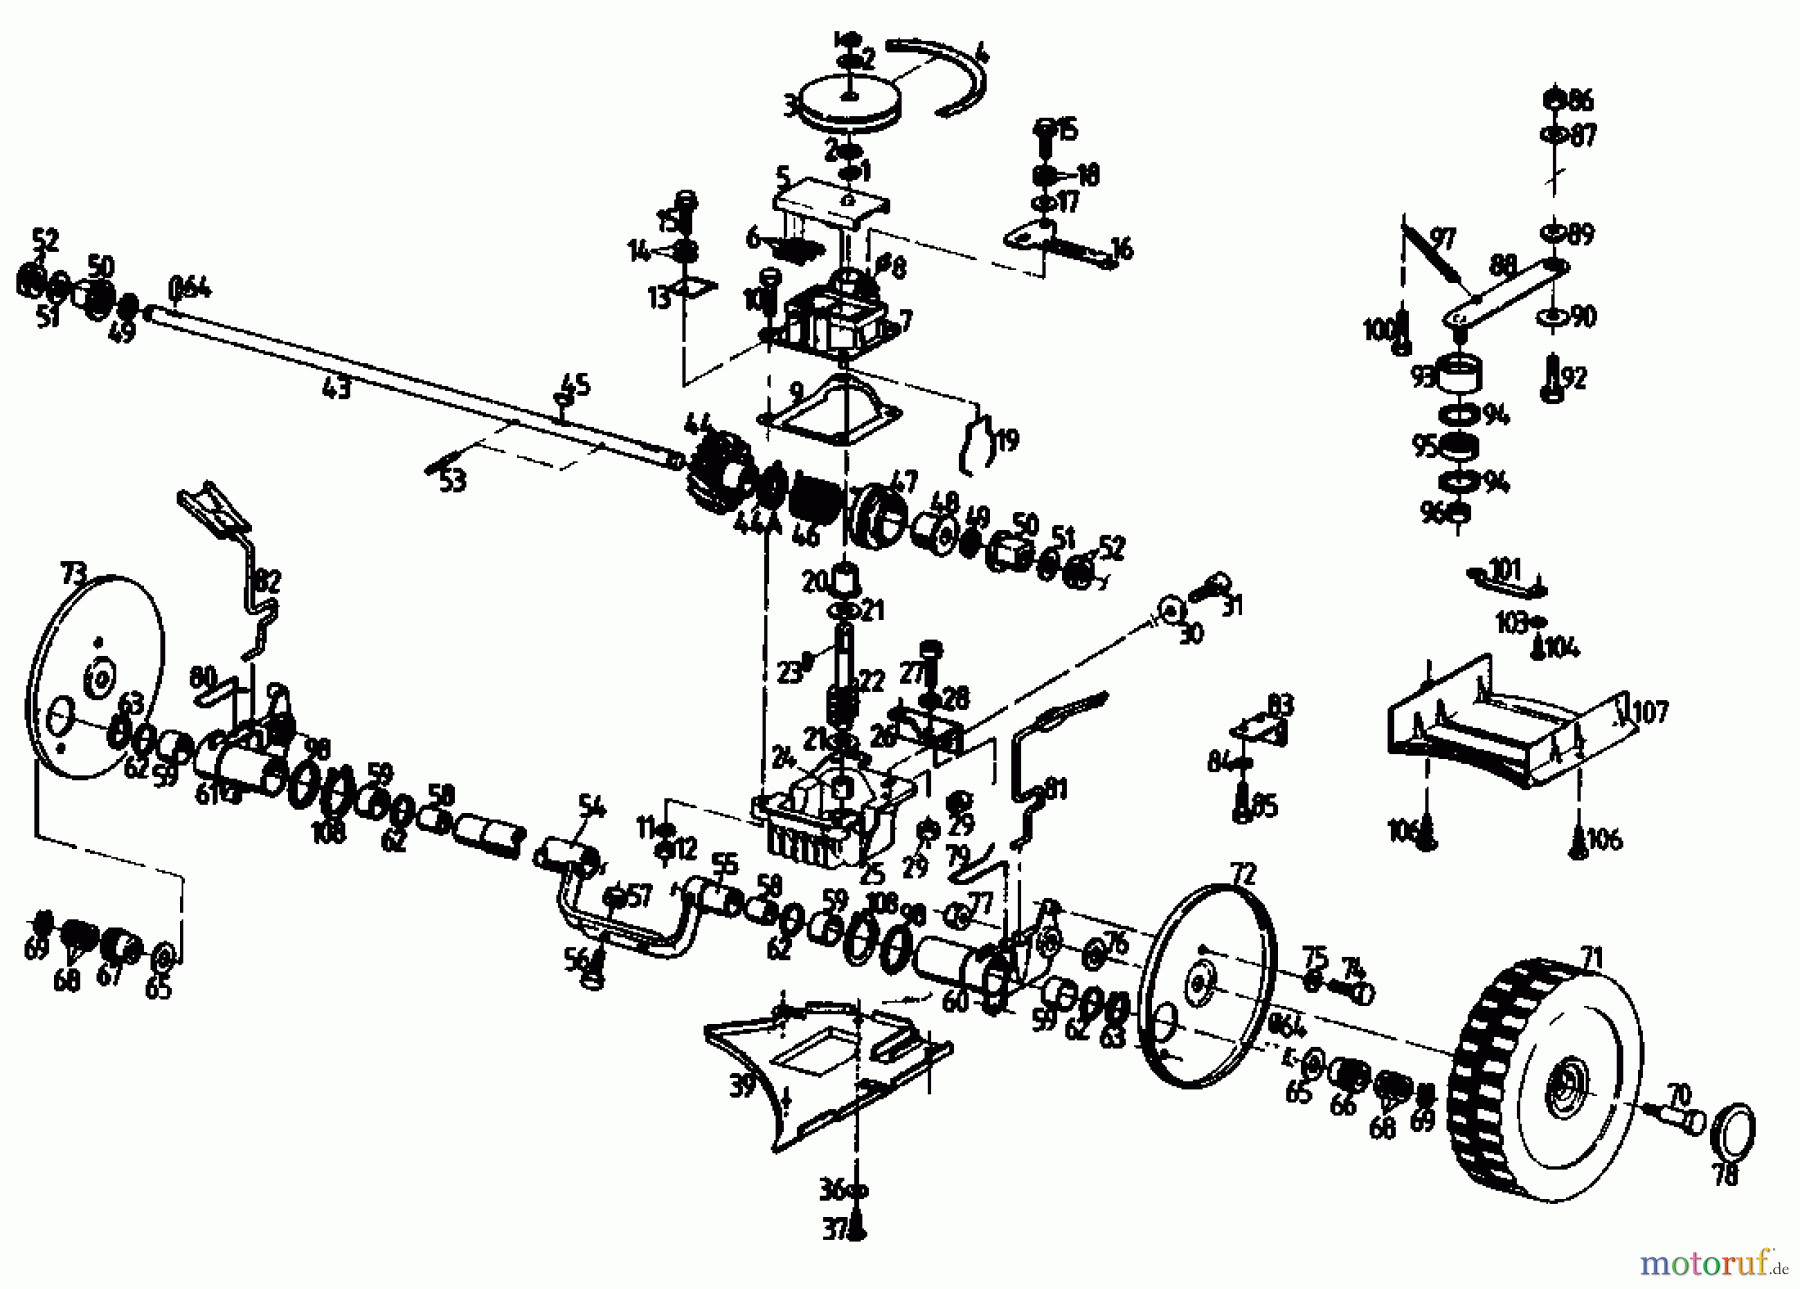  Golf Petrol mower self propelled 345 HR 2 T 02847.06  (1989) Gearbox